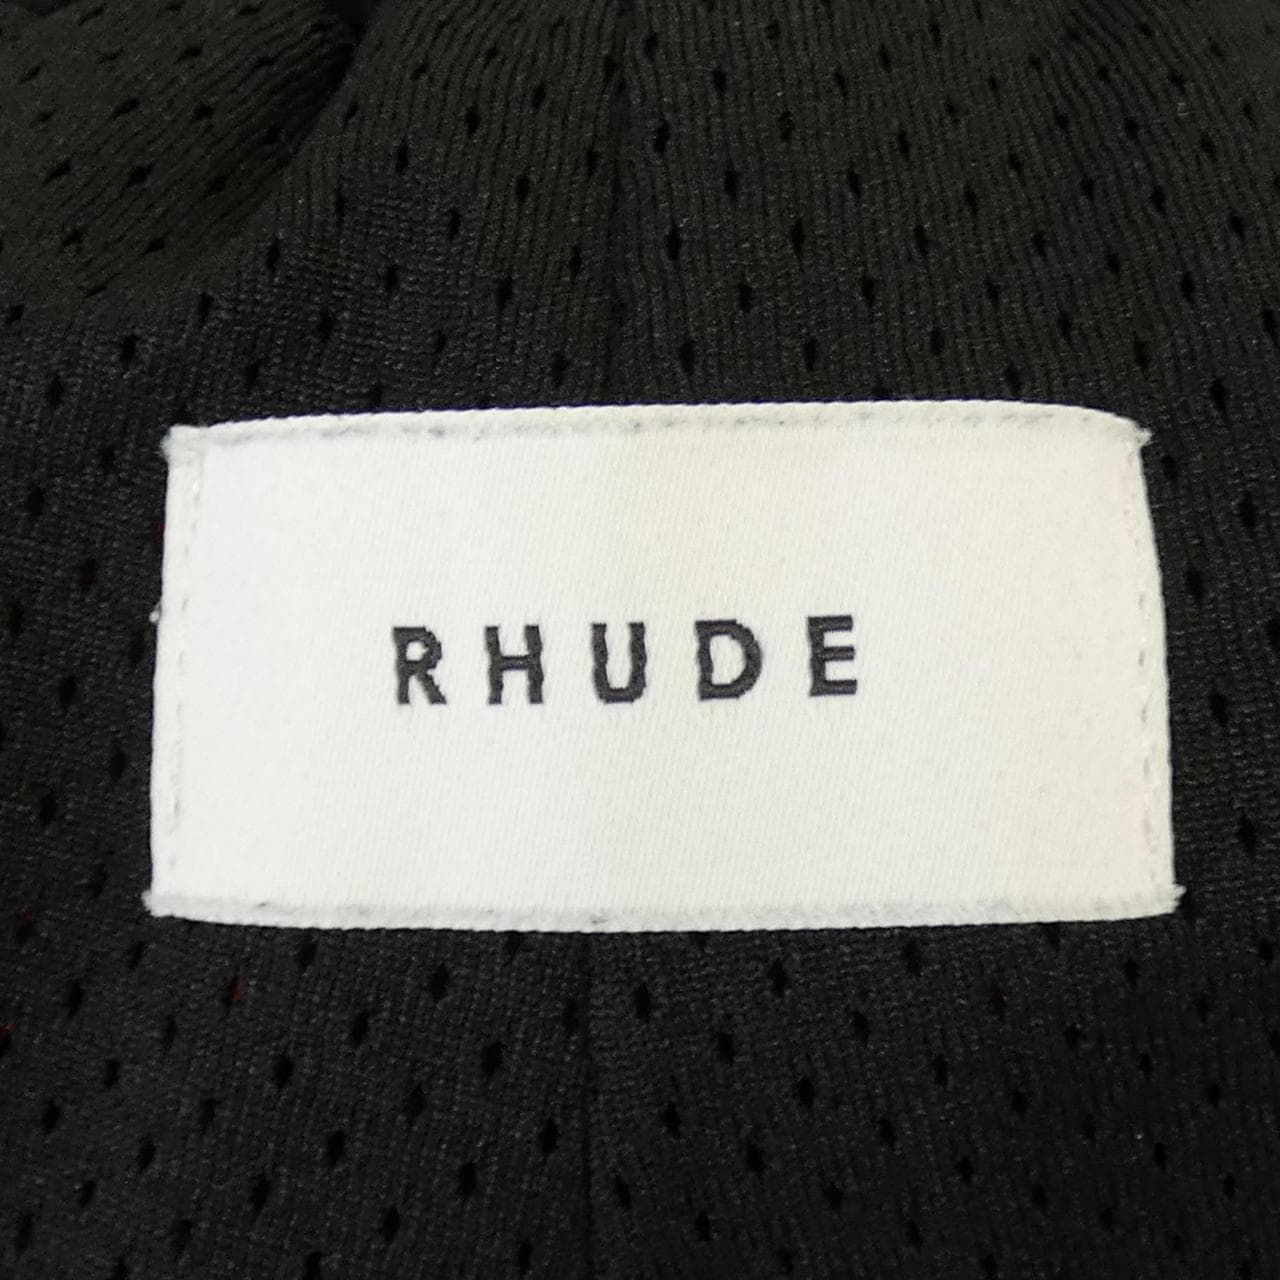 RHUDE shorts